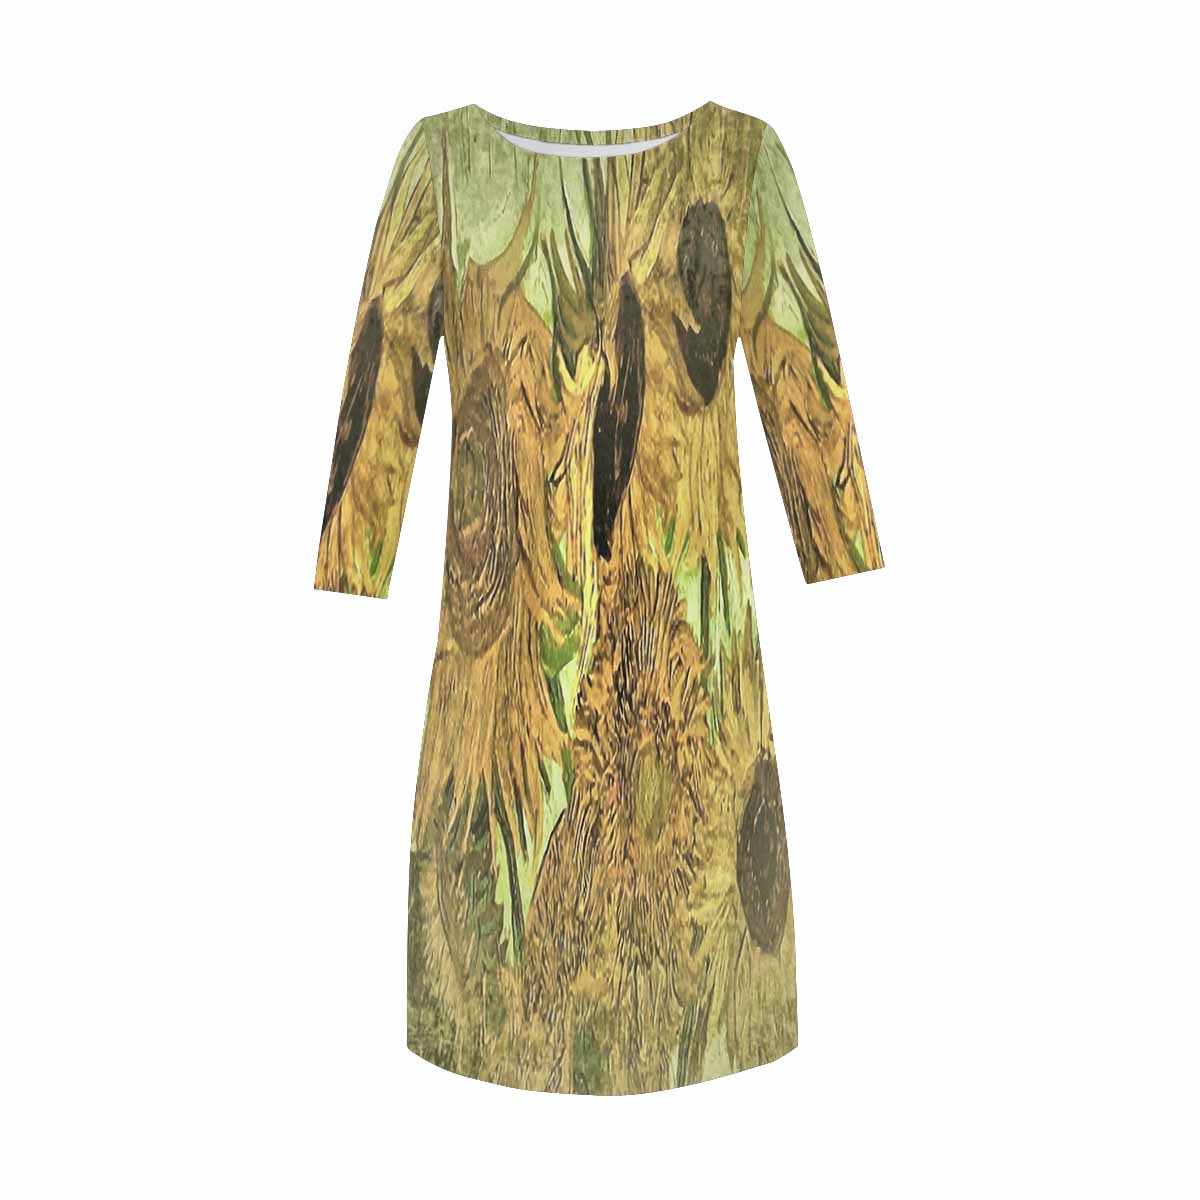 Vintage floral loose dress, model D29532 Design 48x